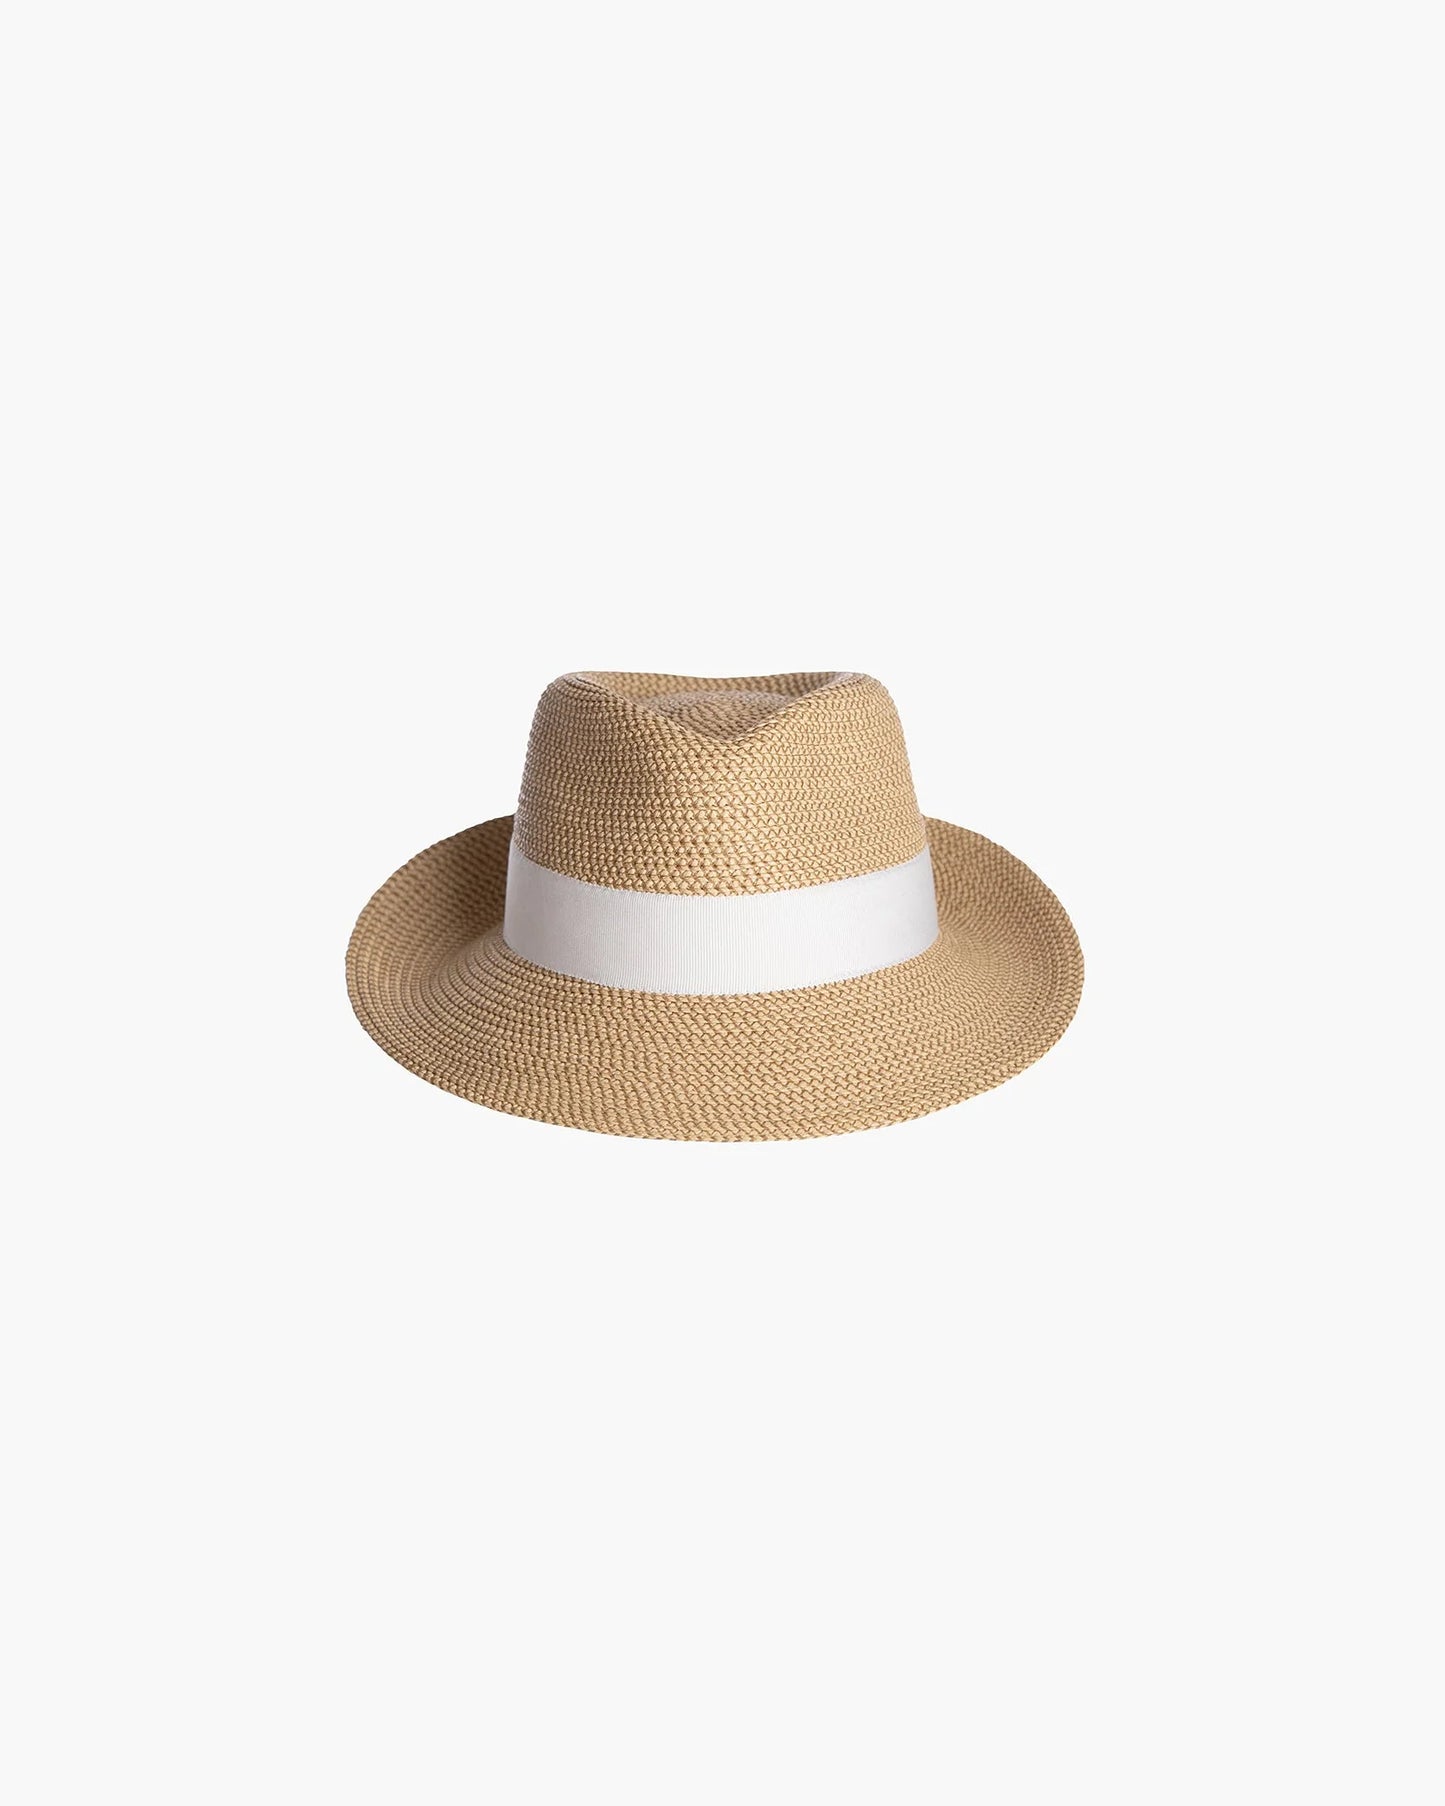 Squishee® Classic Fedora Hat